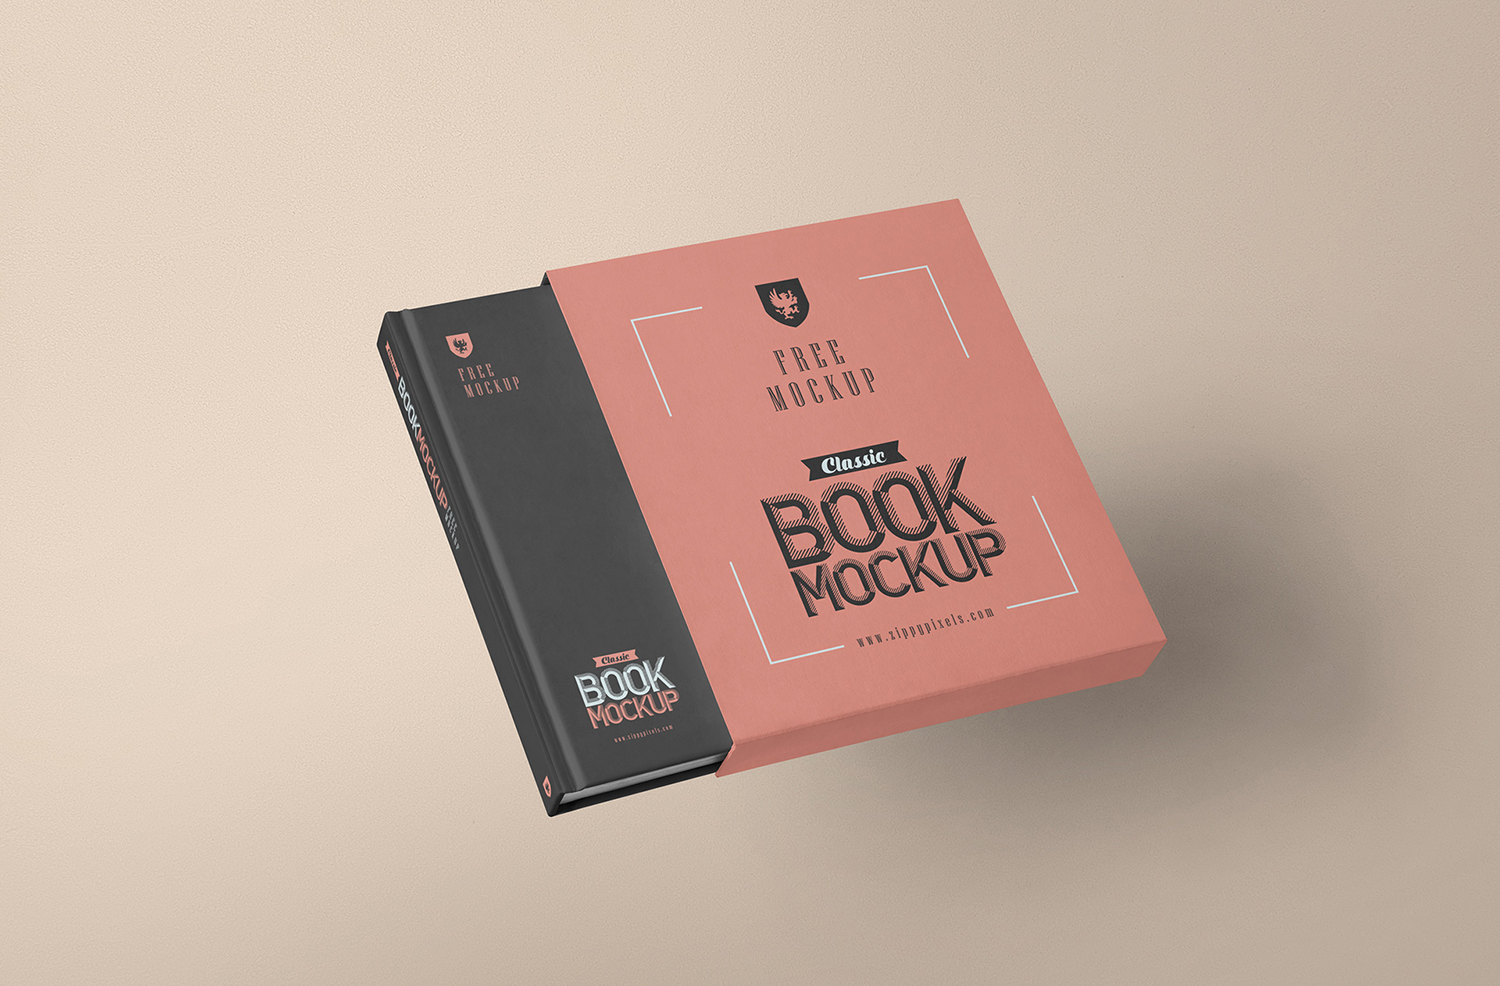 Slipcase Book Mockup PSD